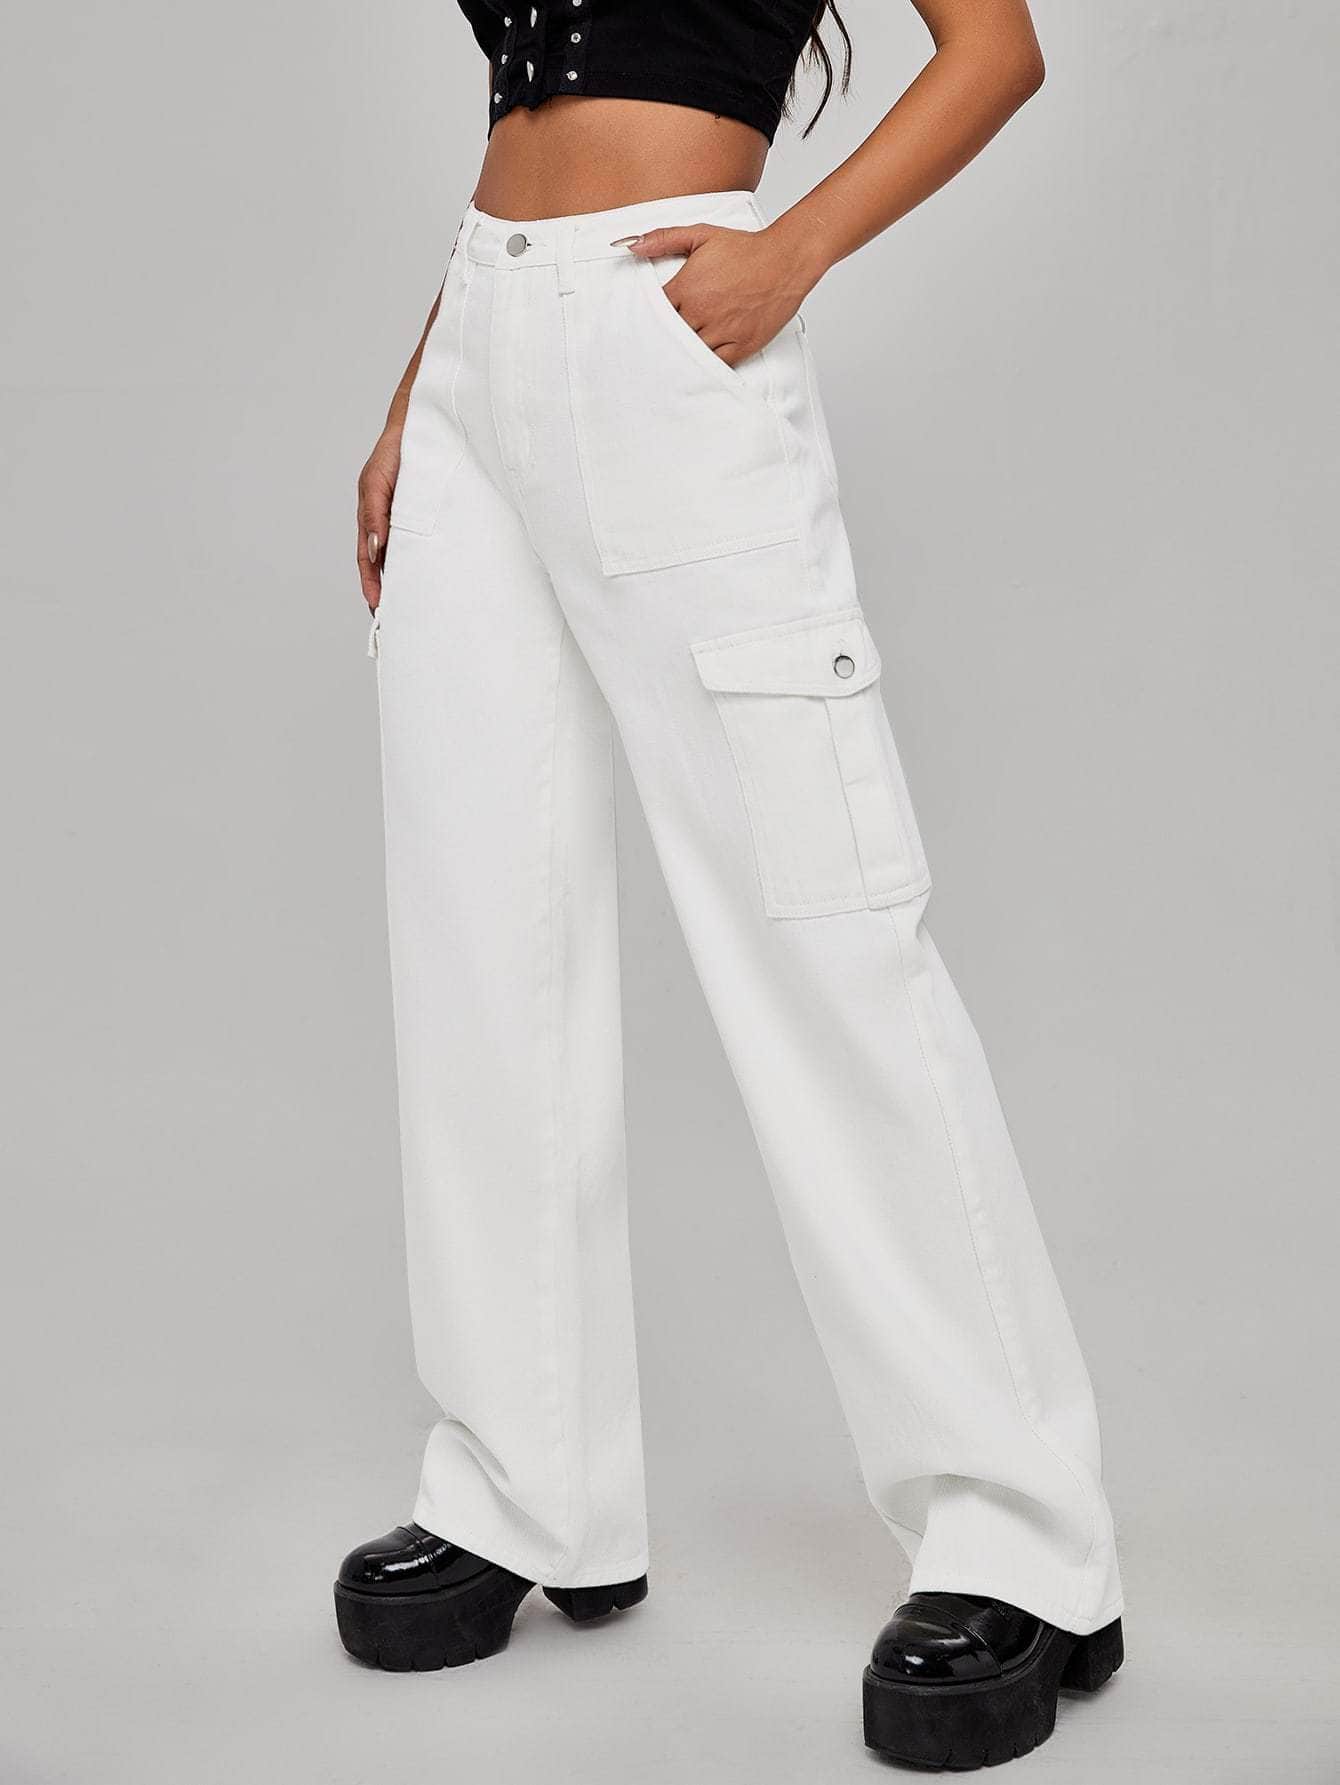 Blanco / XS Jeans de pierna ancha con bolsillo con solapa de cintura alta